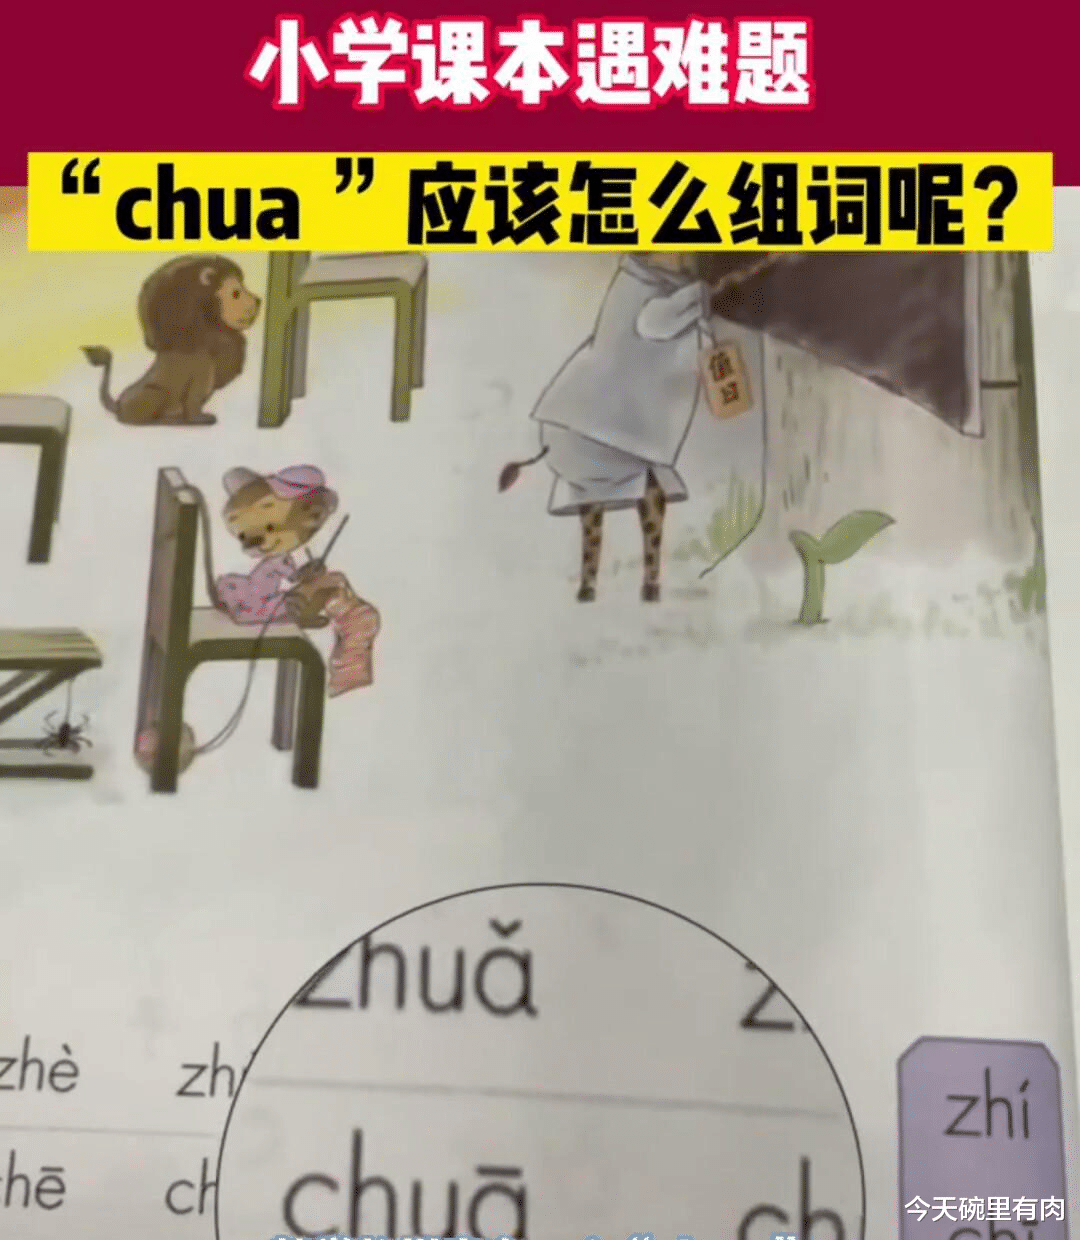 有网友指出小学一年级语文教材中出现“错误”拼音 chua且无法组词